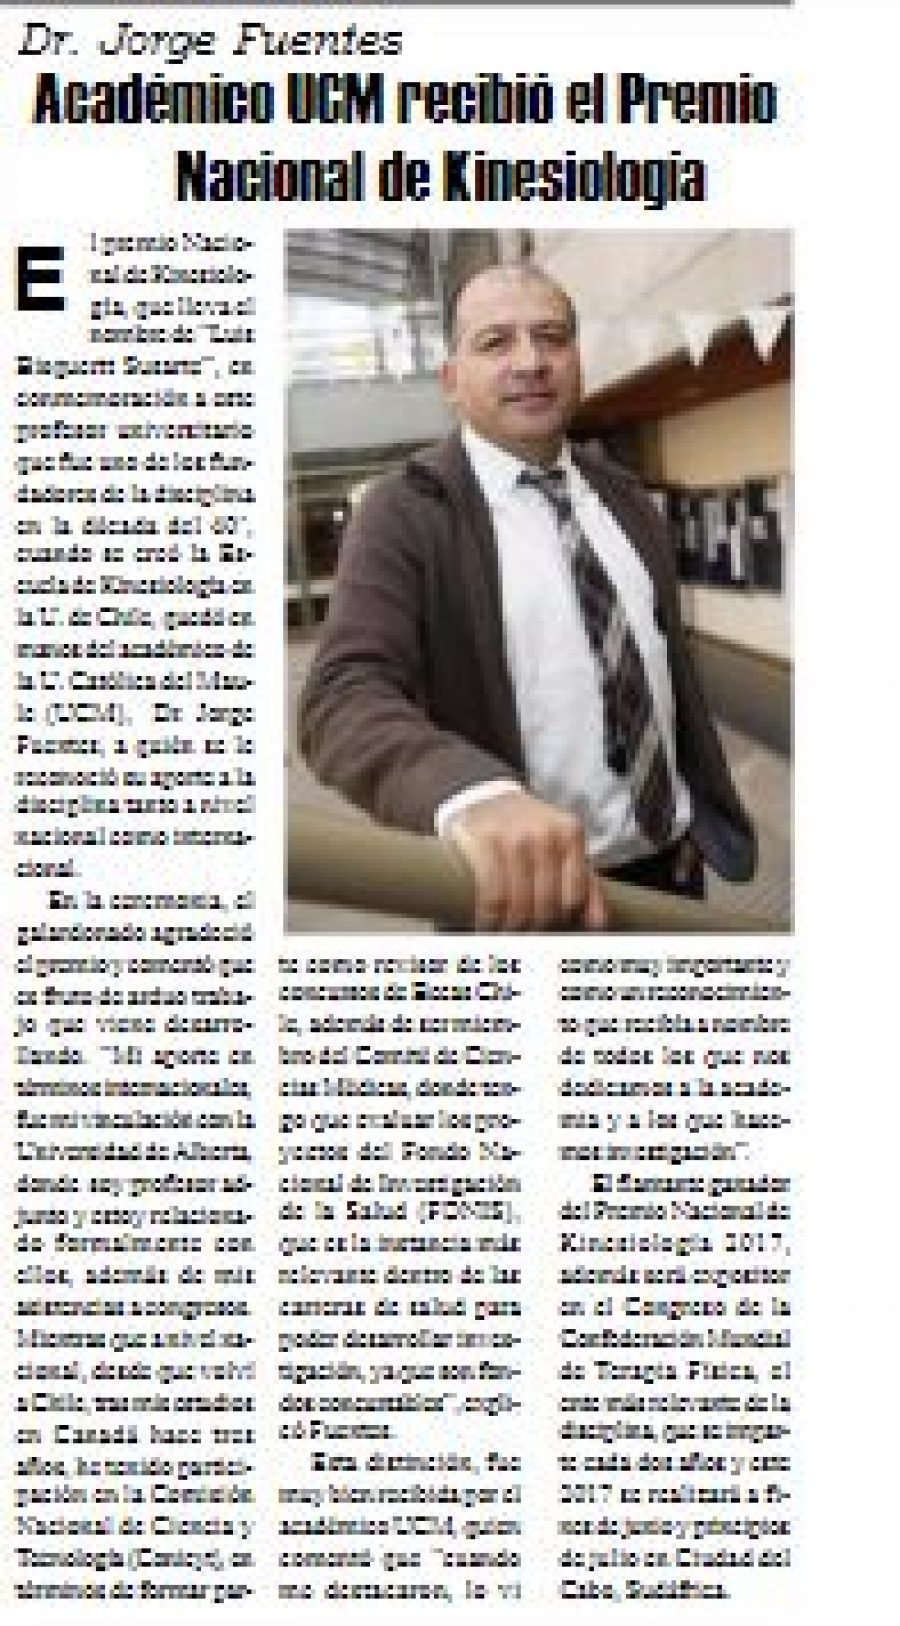 26 de mayo en Diario El Heraldo: “Académico UCM recibió el Premio Nacional de Kinesiología”